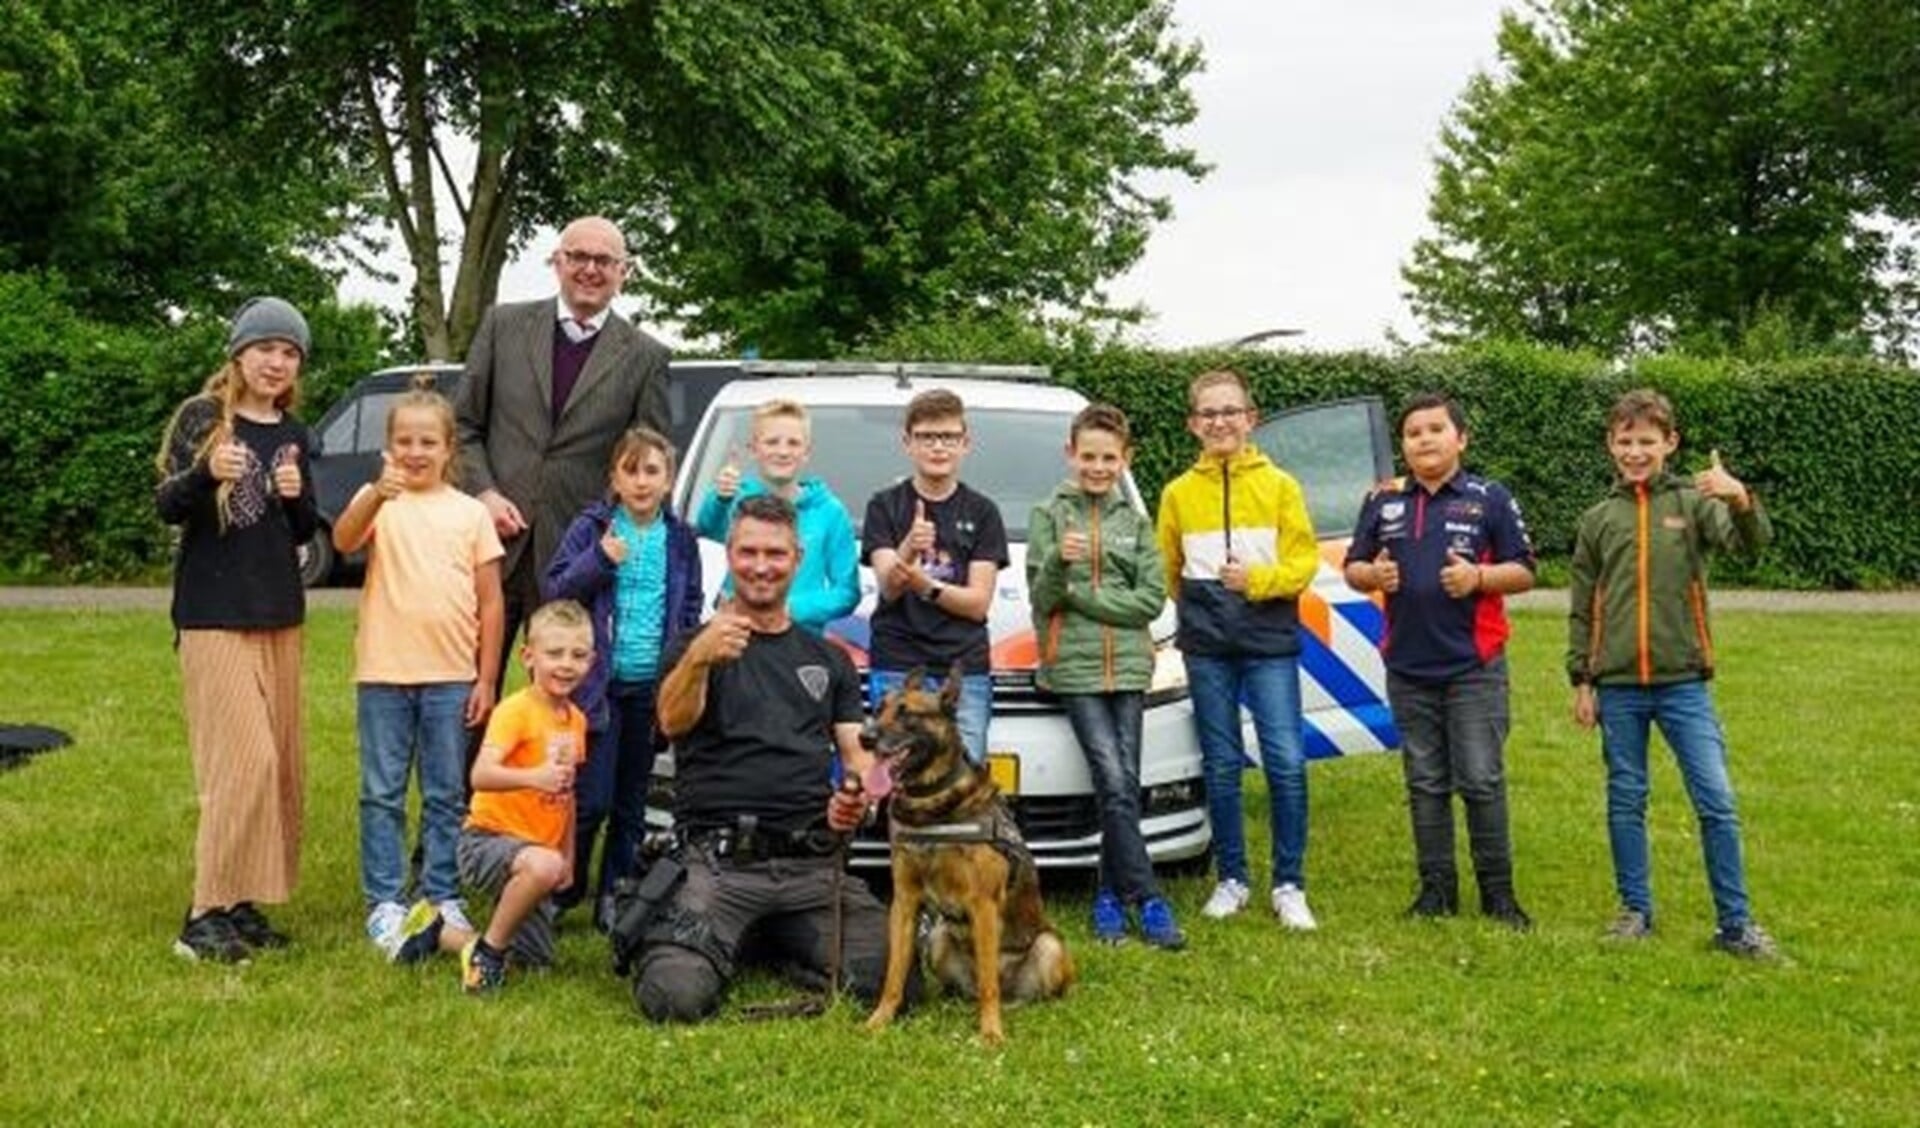 De winnende Cyber Agents met politiehond Bumper en zijn baasje en de burgemeester van Krimpen aan den IJssel 